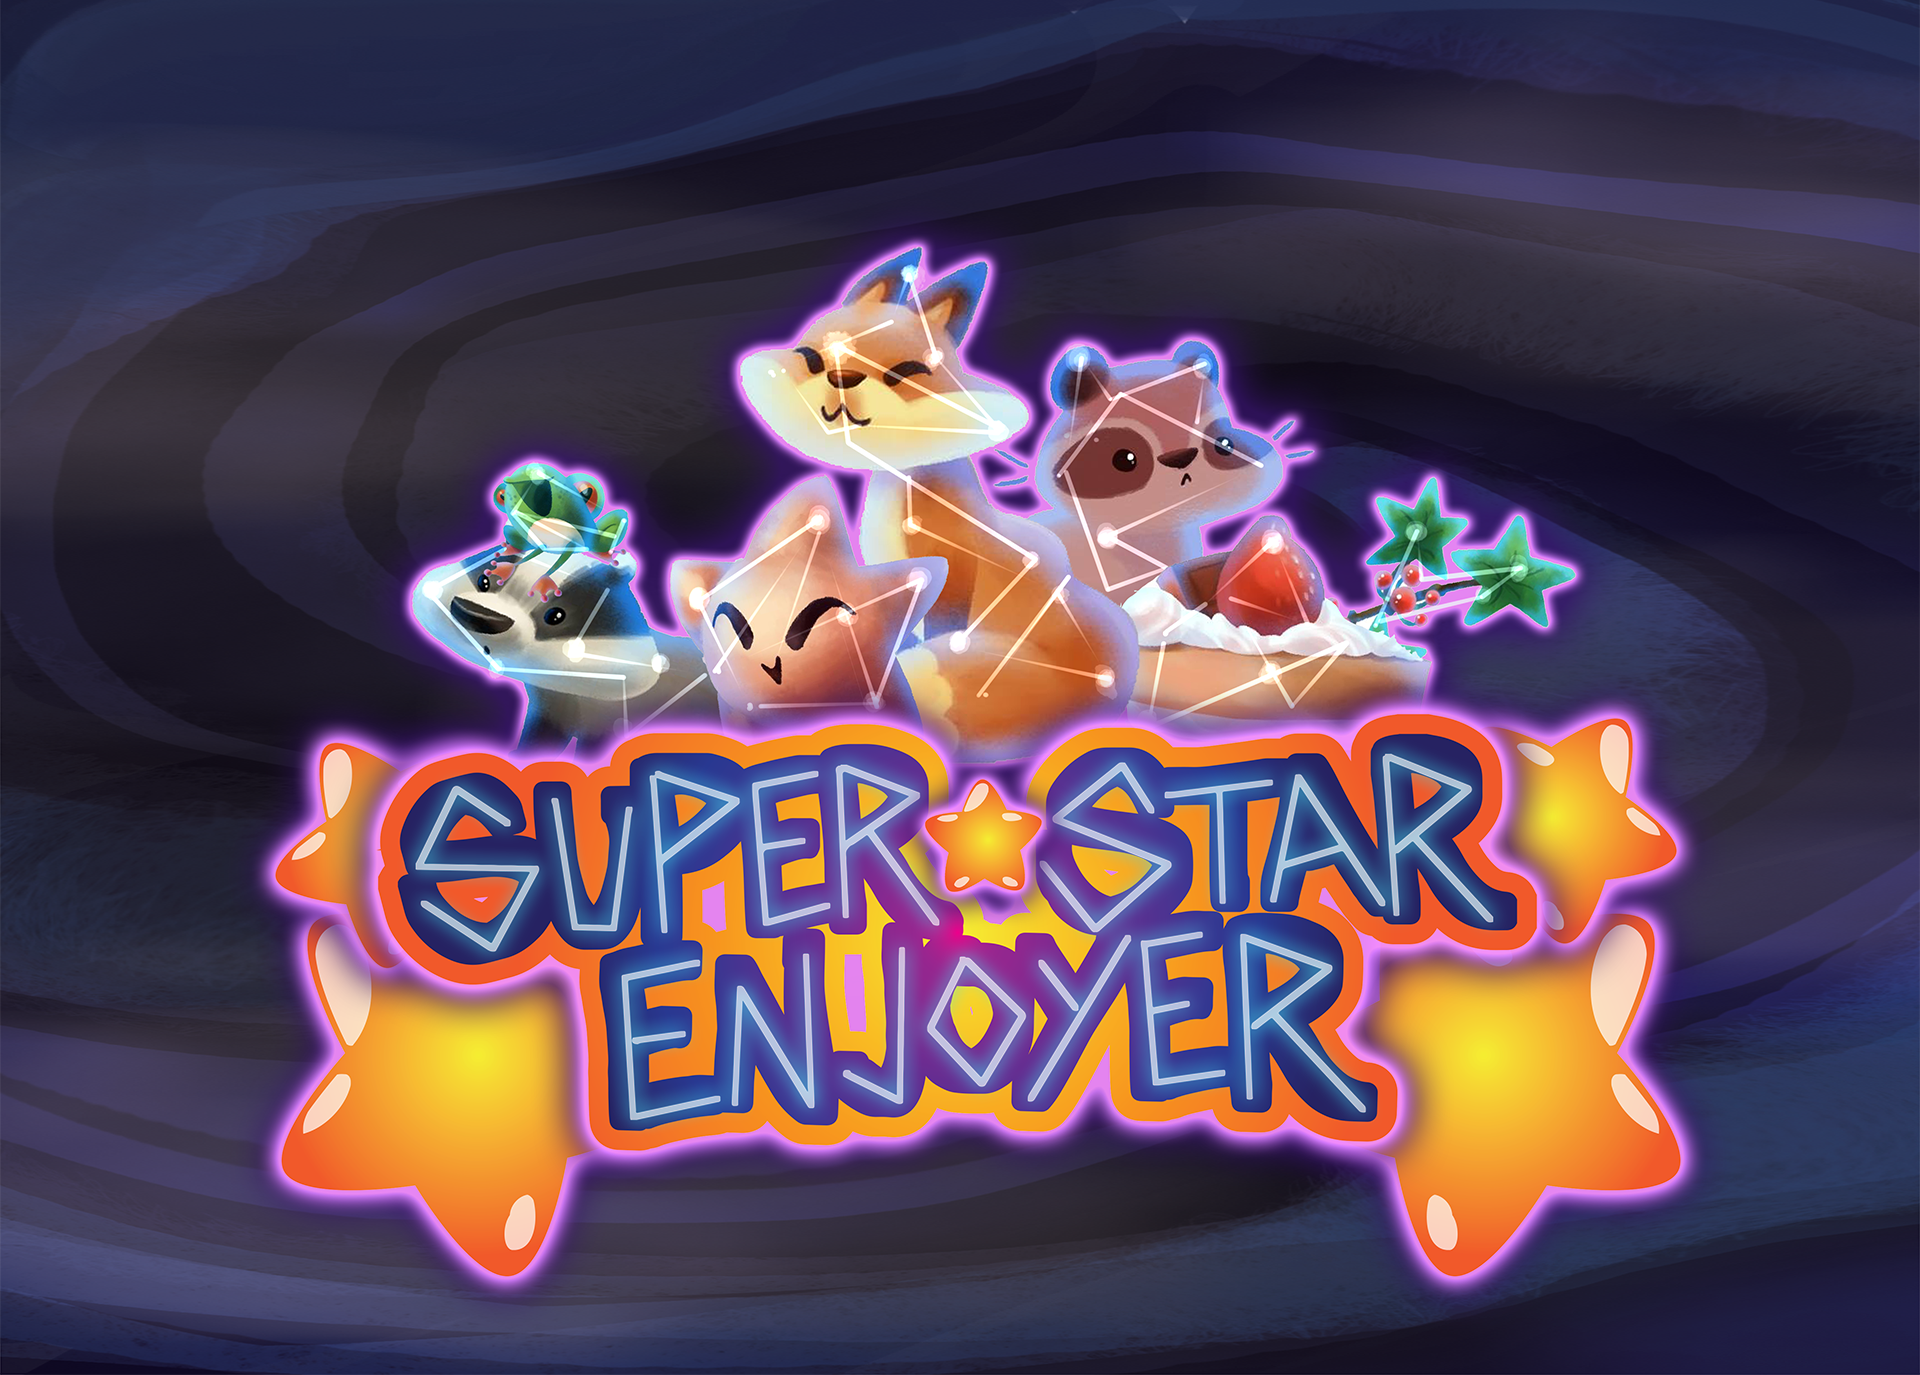 Super Star Enjoyer